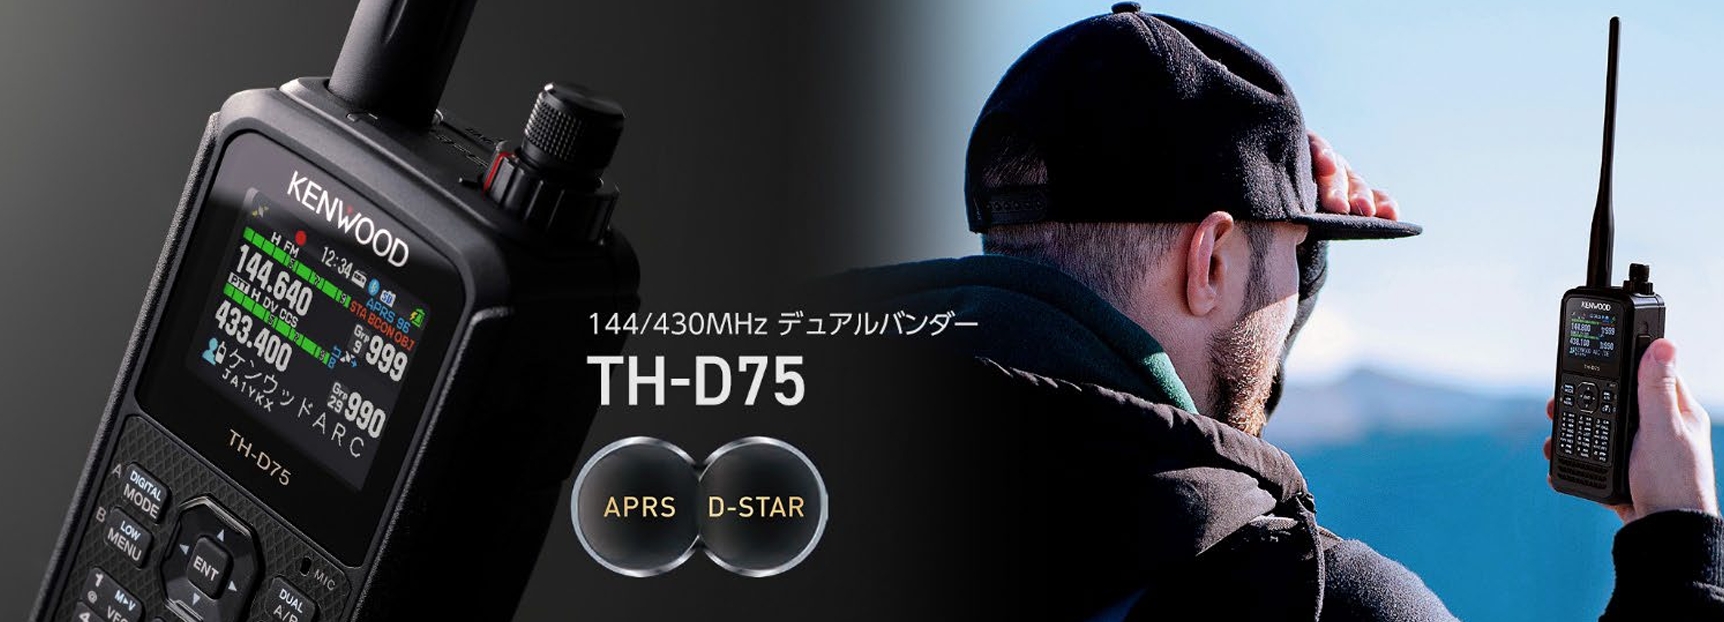 TH-D75